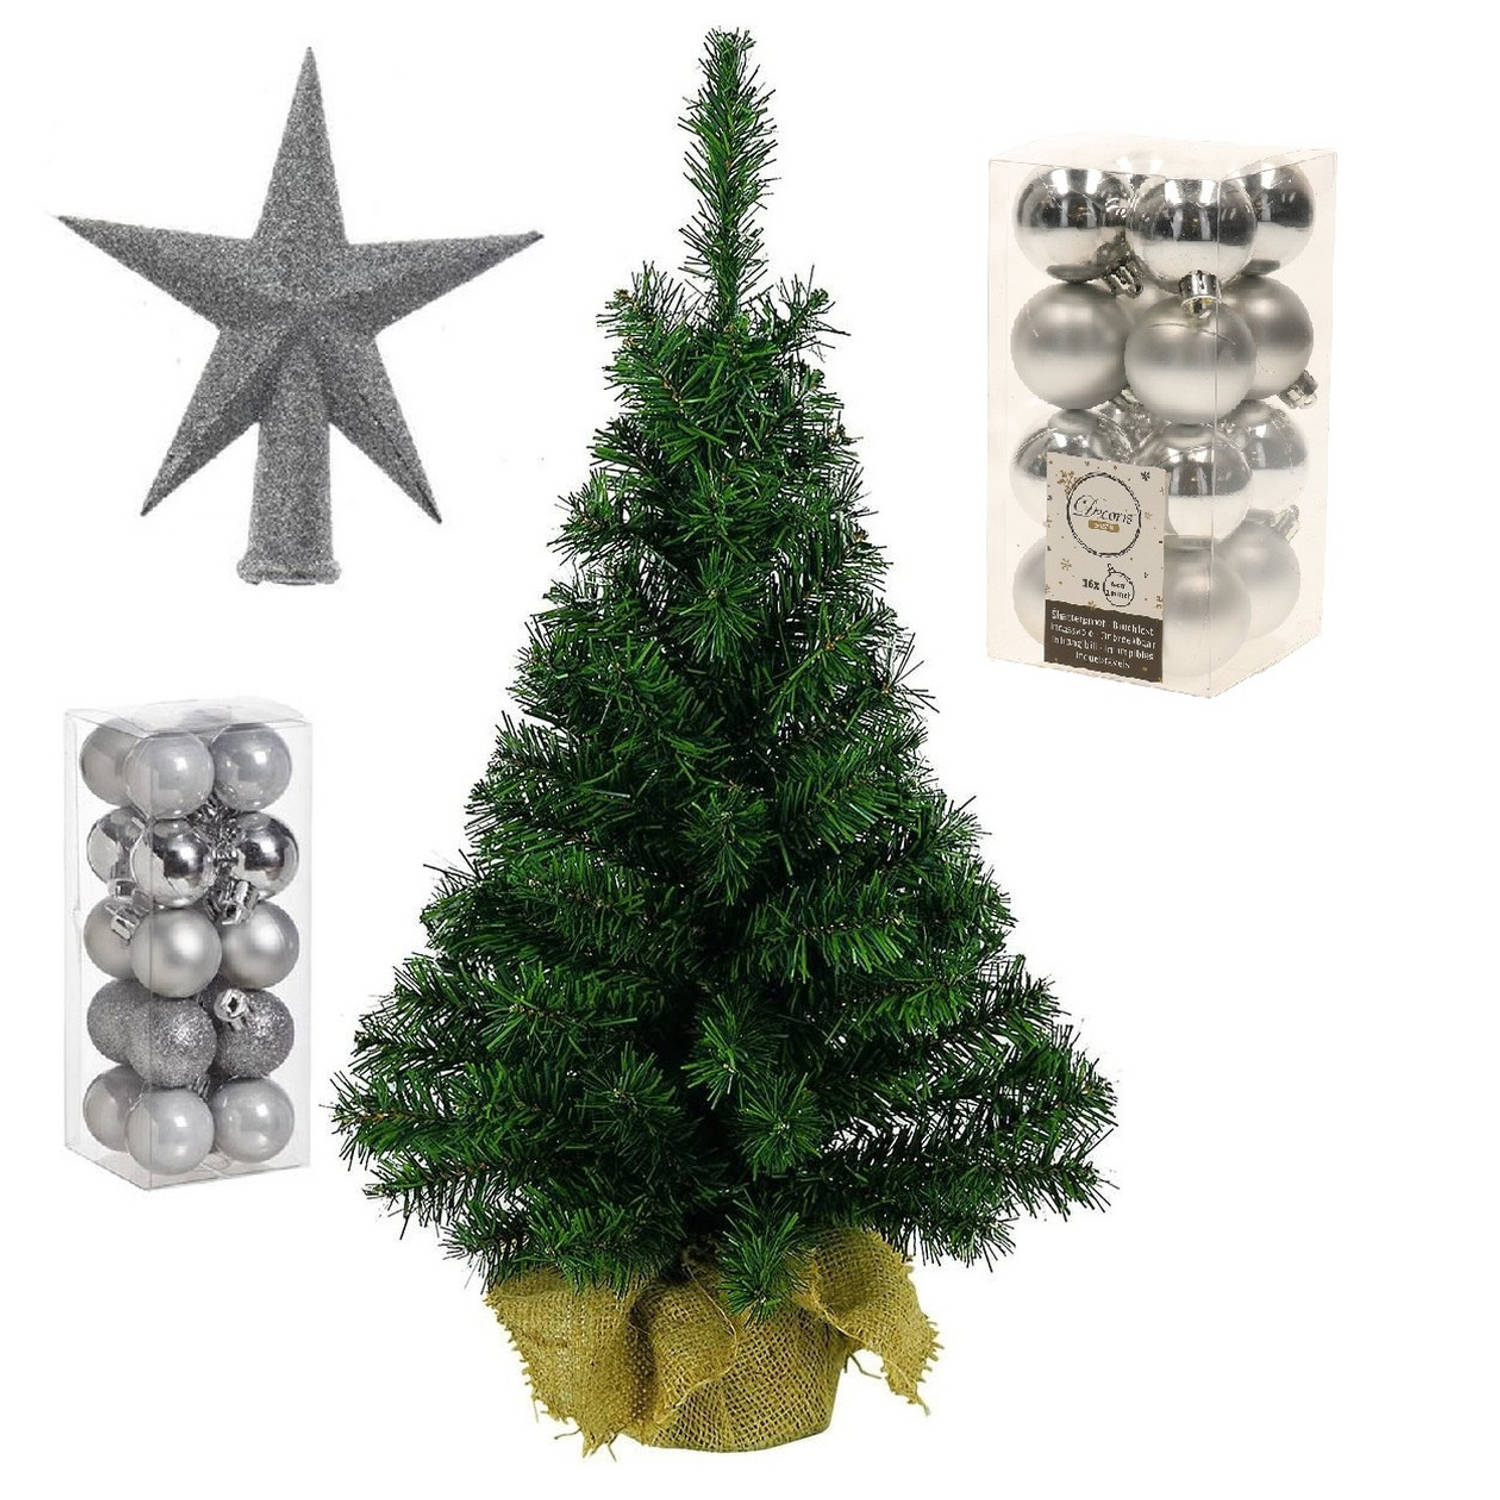 Volle kunst kerstboom 75 cm in jute zak inclusief zilveren versiering 37-delig Kunstkerstboom